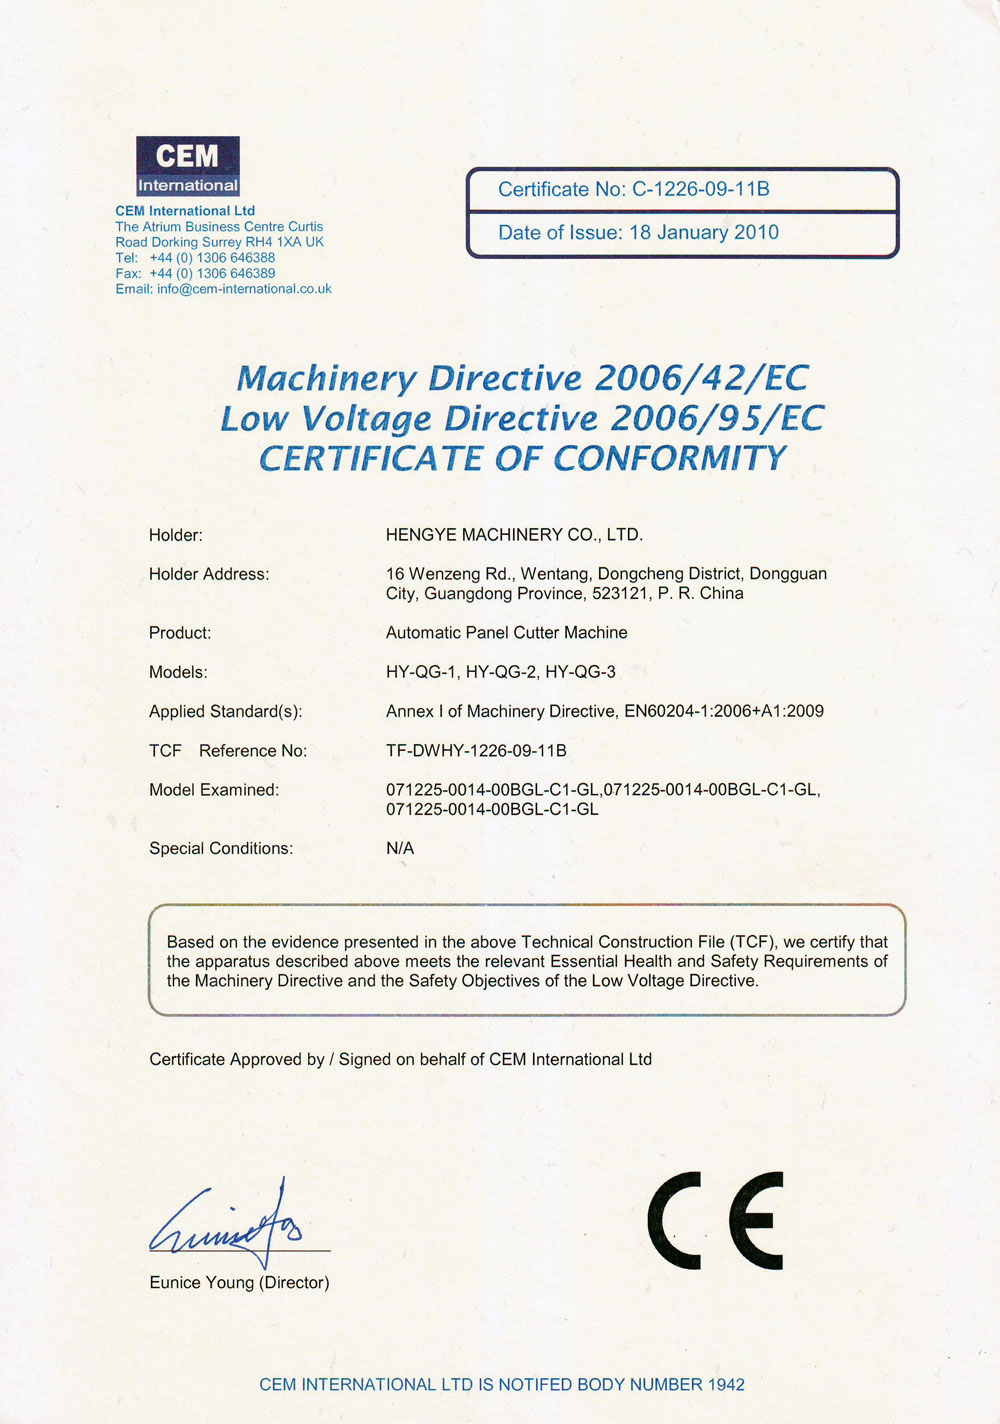 CE:Certification